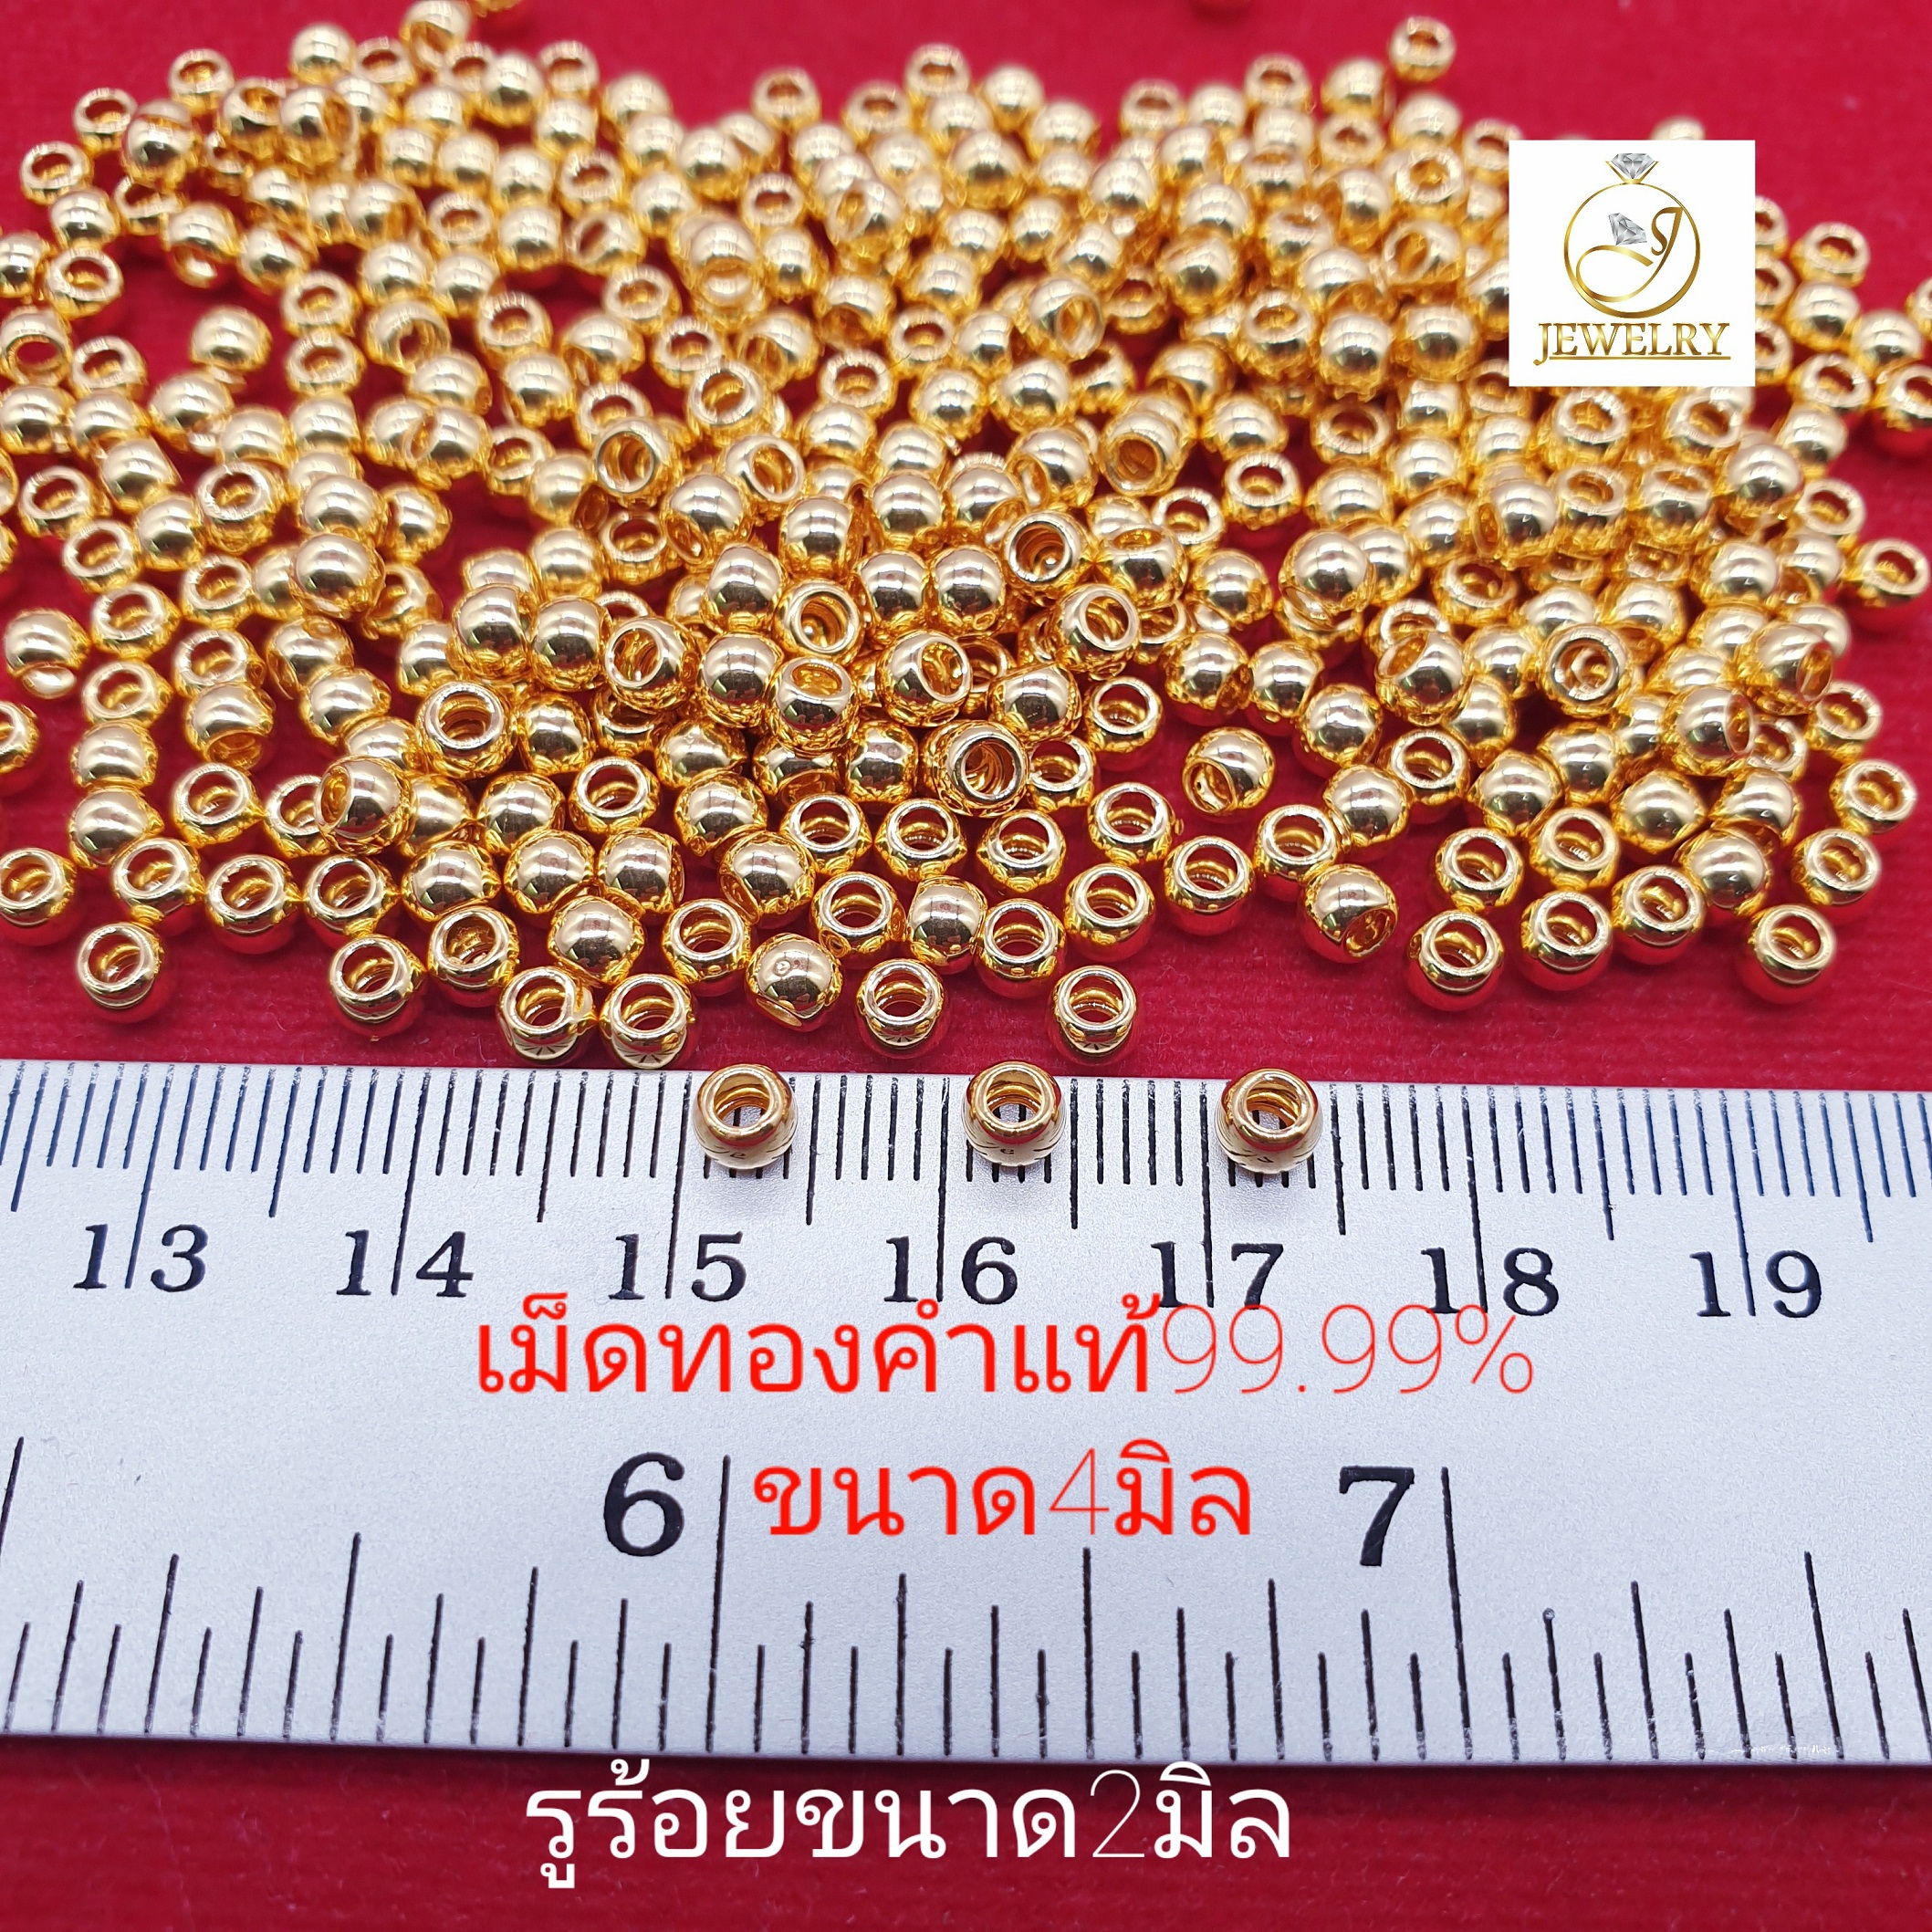 เม็ดอะไหล่ทองคำแท้99.99% ขนาด4มิล #สำหรับงานDIY #accessories สินค้ามีใบรับประกัน ขายได้จำนำได้ เม็ดละ 130 บ.